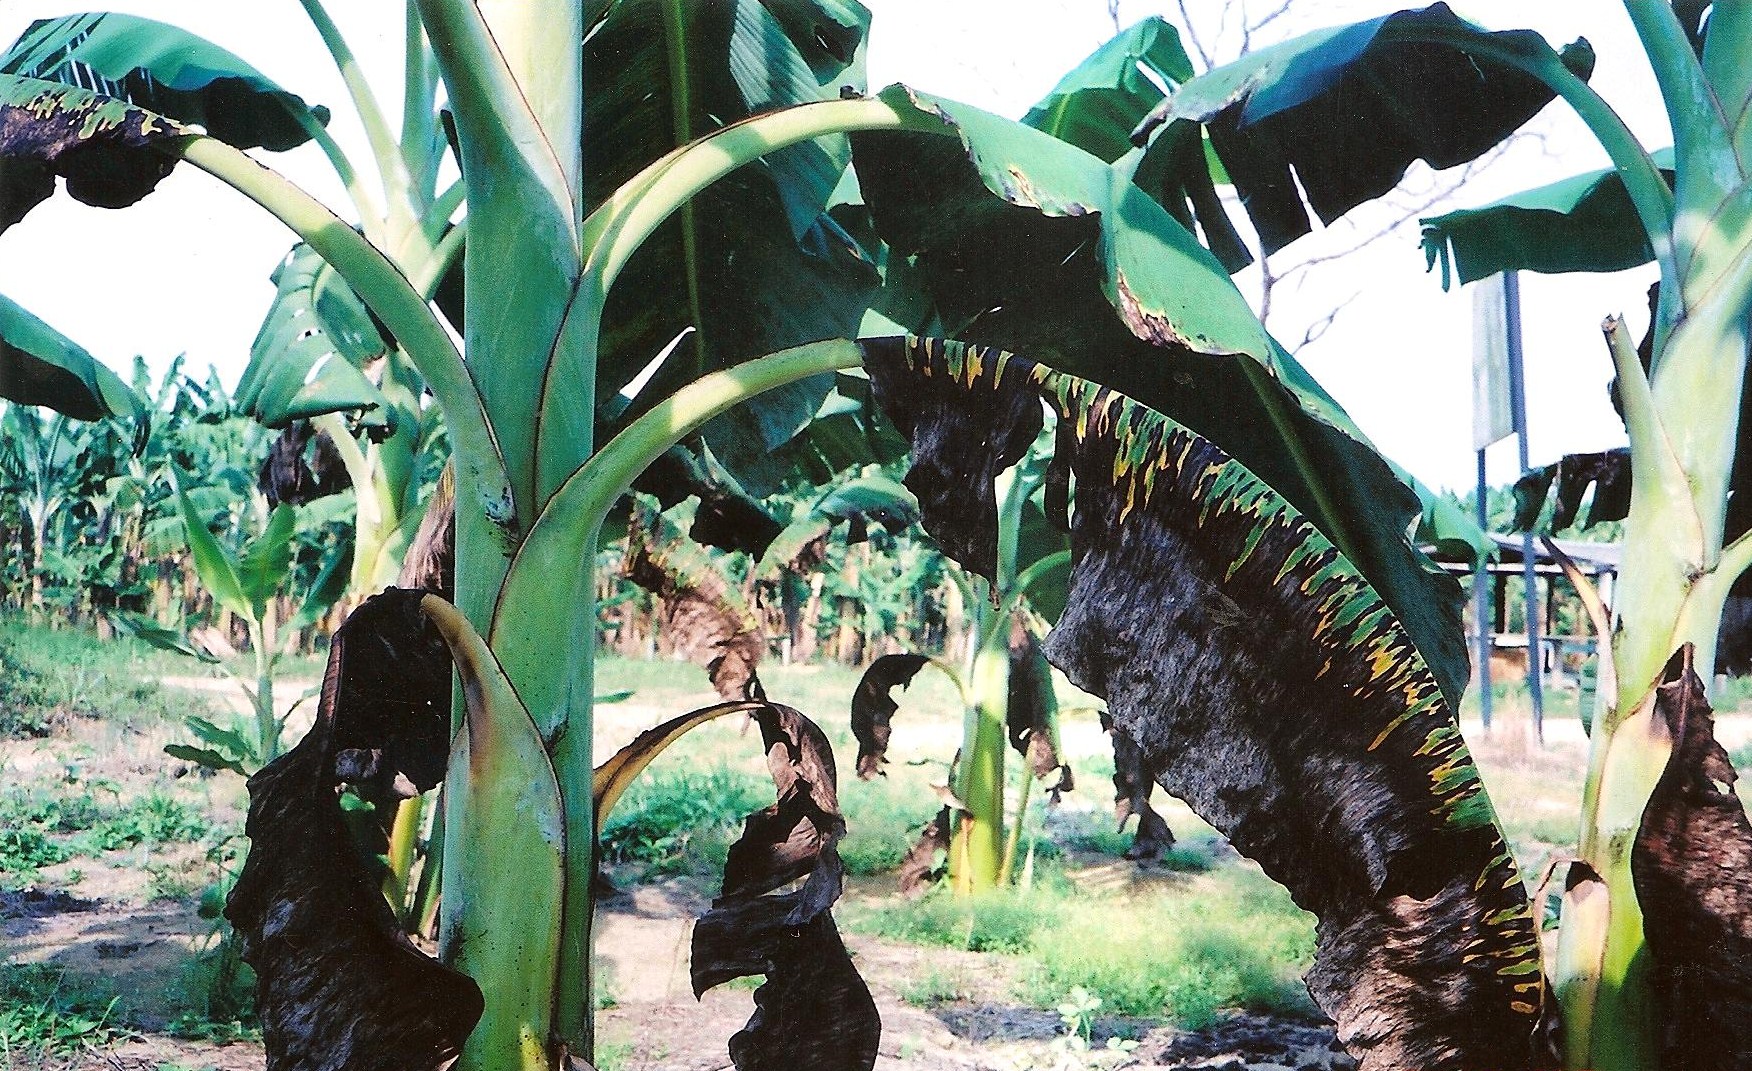 <p><b><p>Folha de planta de banana cv.maçã, exibindo o sintoma típico de sigatoka negra.</p></b></p><p>Autor: Josiane T. Ferrari</p>